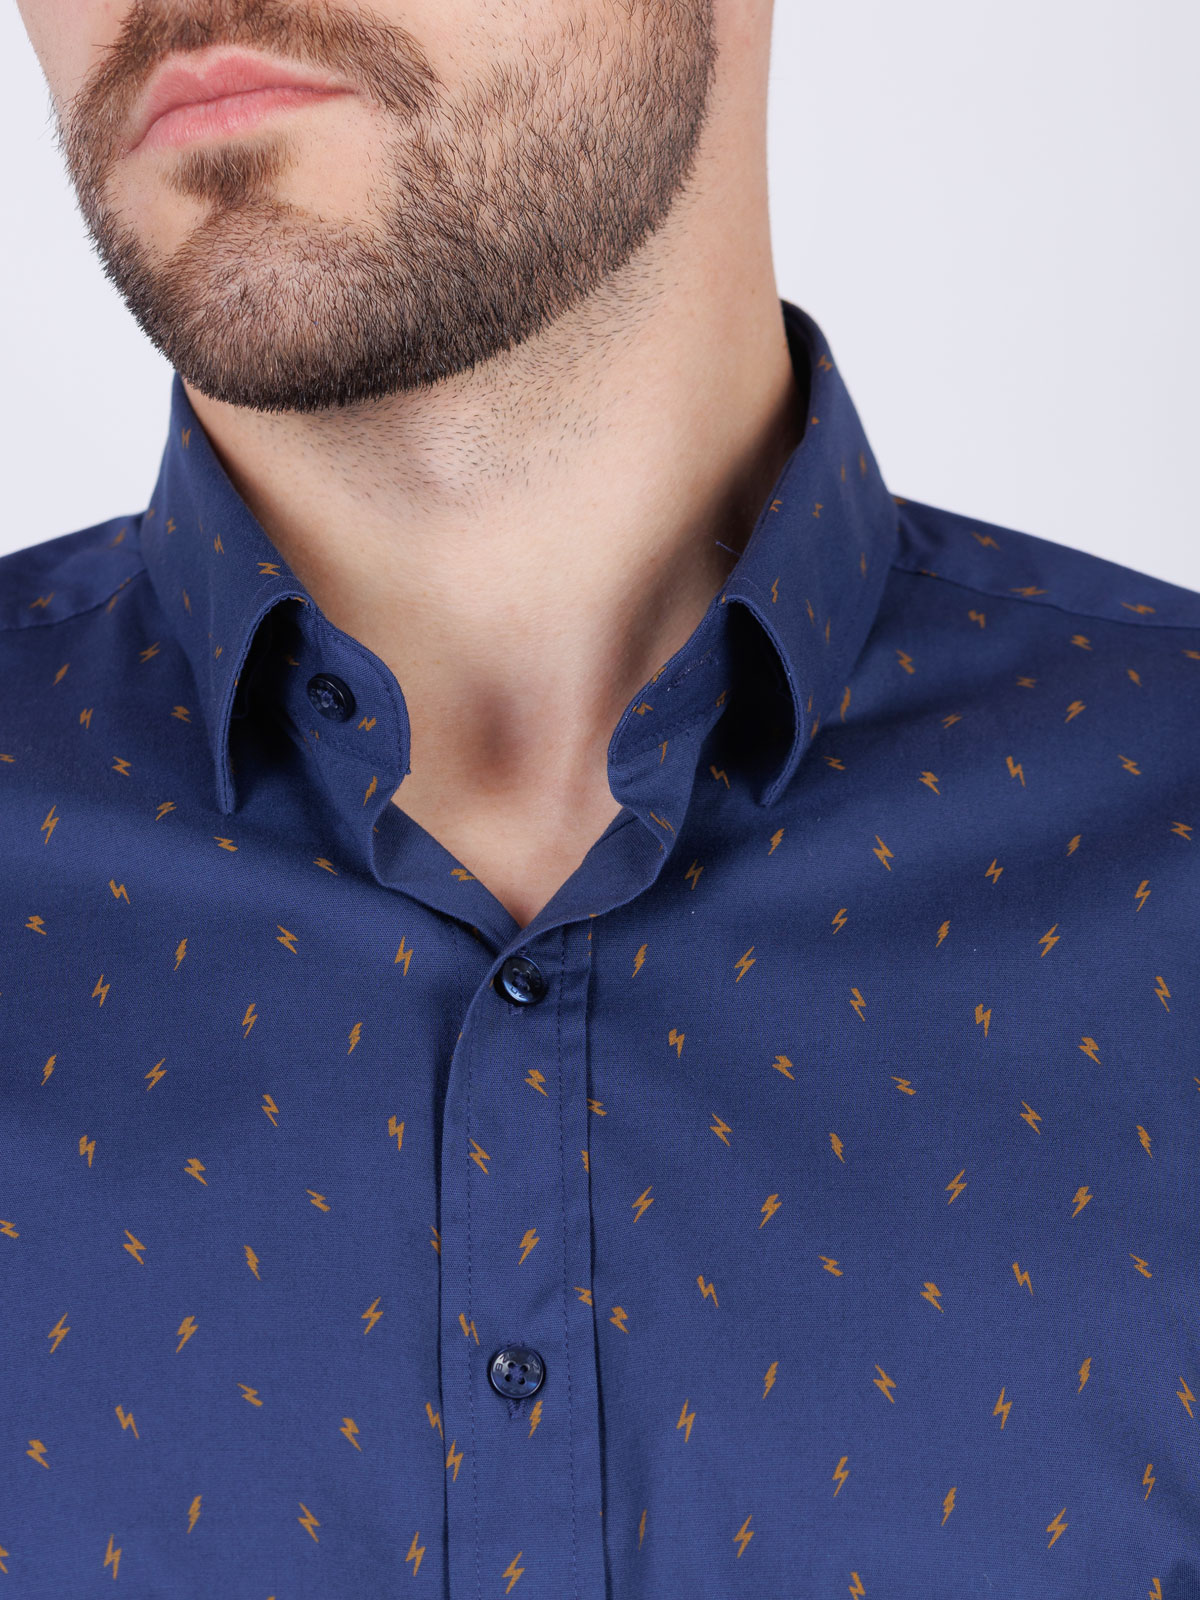 Ανδρικό πουκάμισο με στάμπα αστραπής - 21545 € 43.87 img3